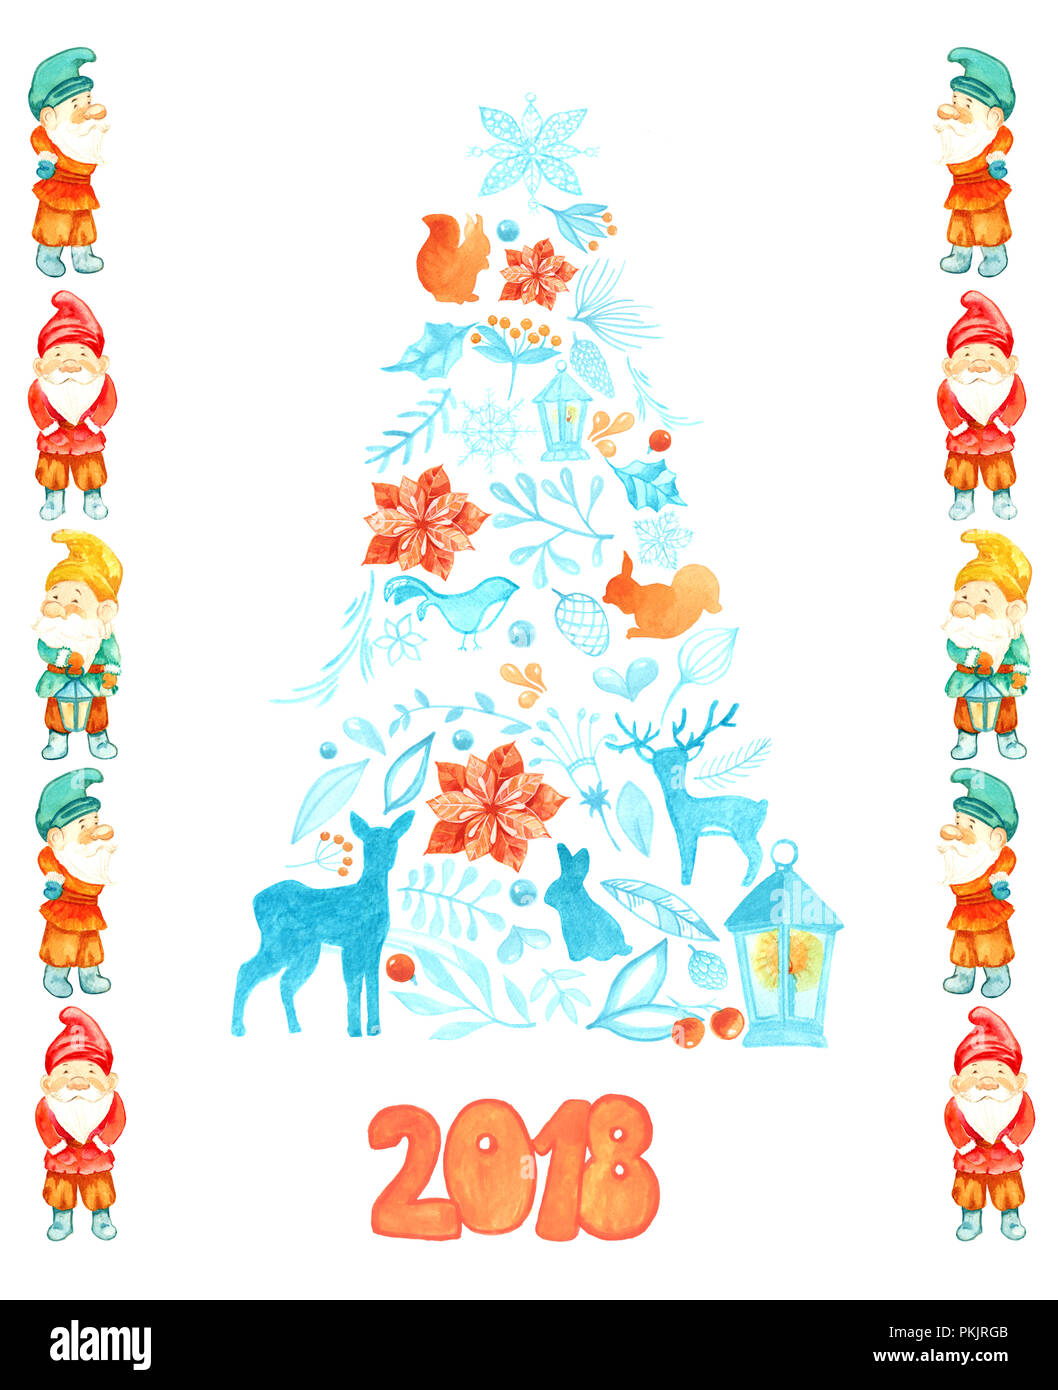 Aquarelle carte de Noël avec l'arbre de Noël et les gnomes. Modèle de carte postale pour la designer. Chevreuil, écureuil, lapin, oiseau, branche, baies, lanterne Banque D'Images